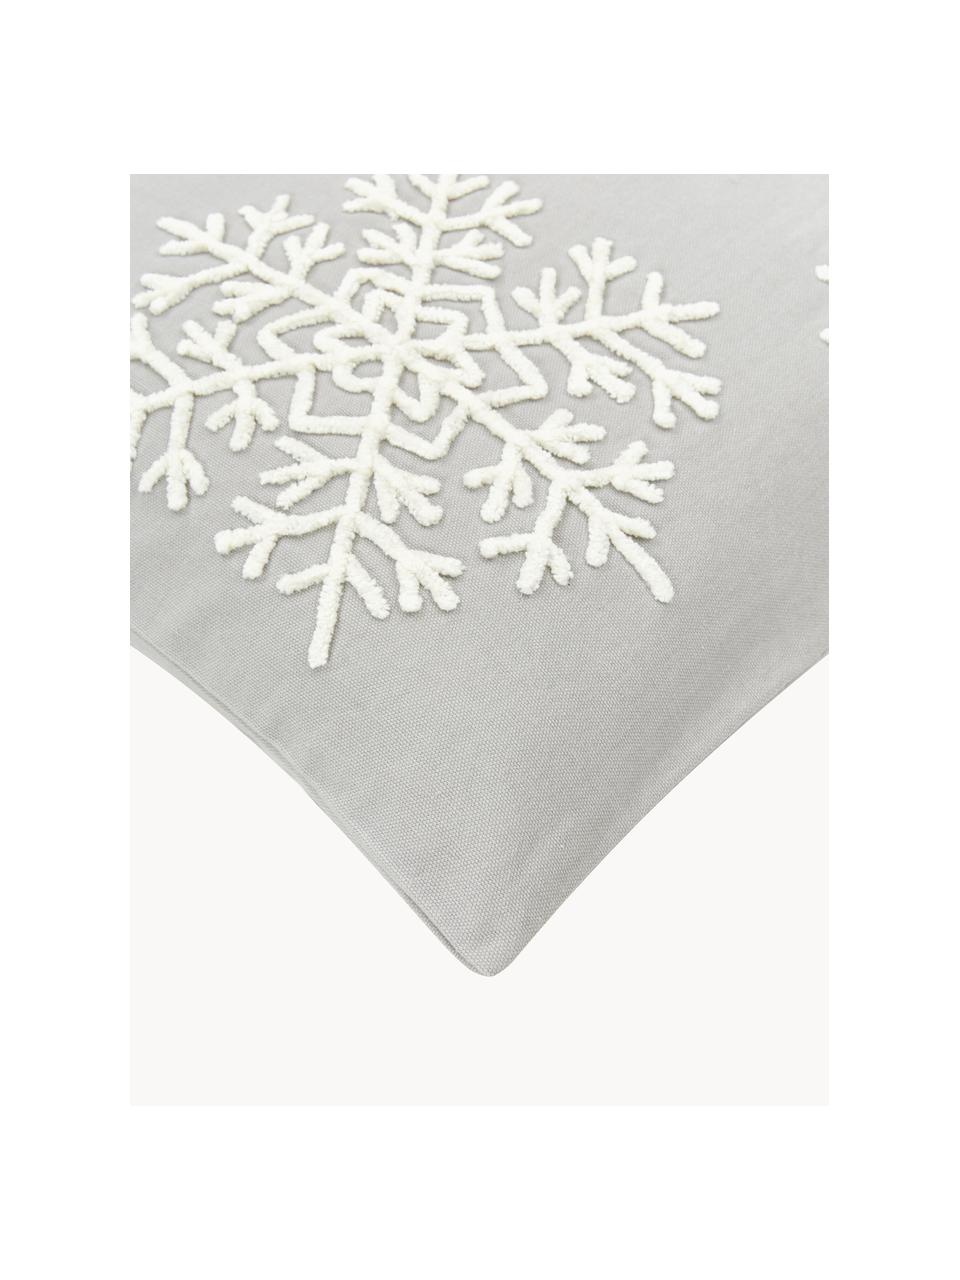 Geborduurde kussenhoes Snowflake, 100% katoen, Grijs, B 45 x L 45 cm